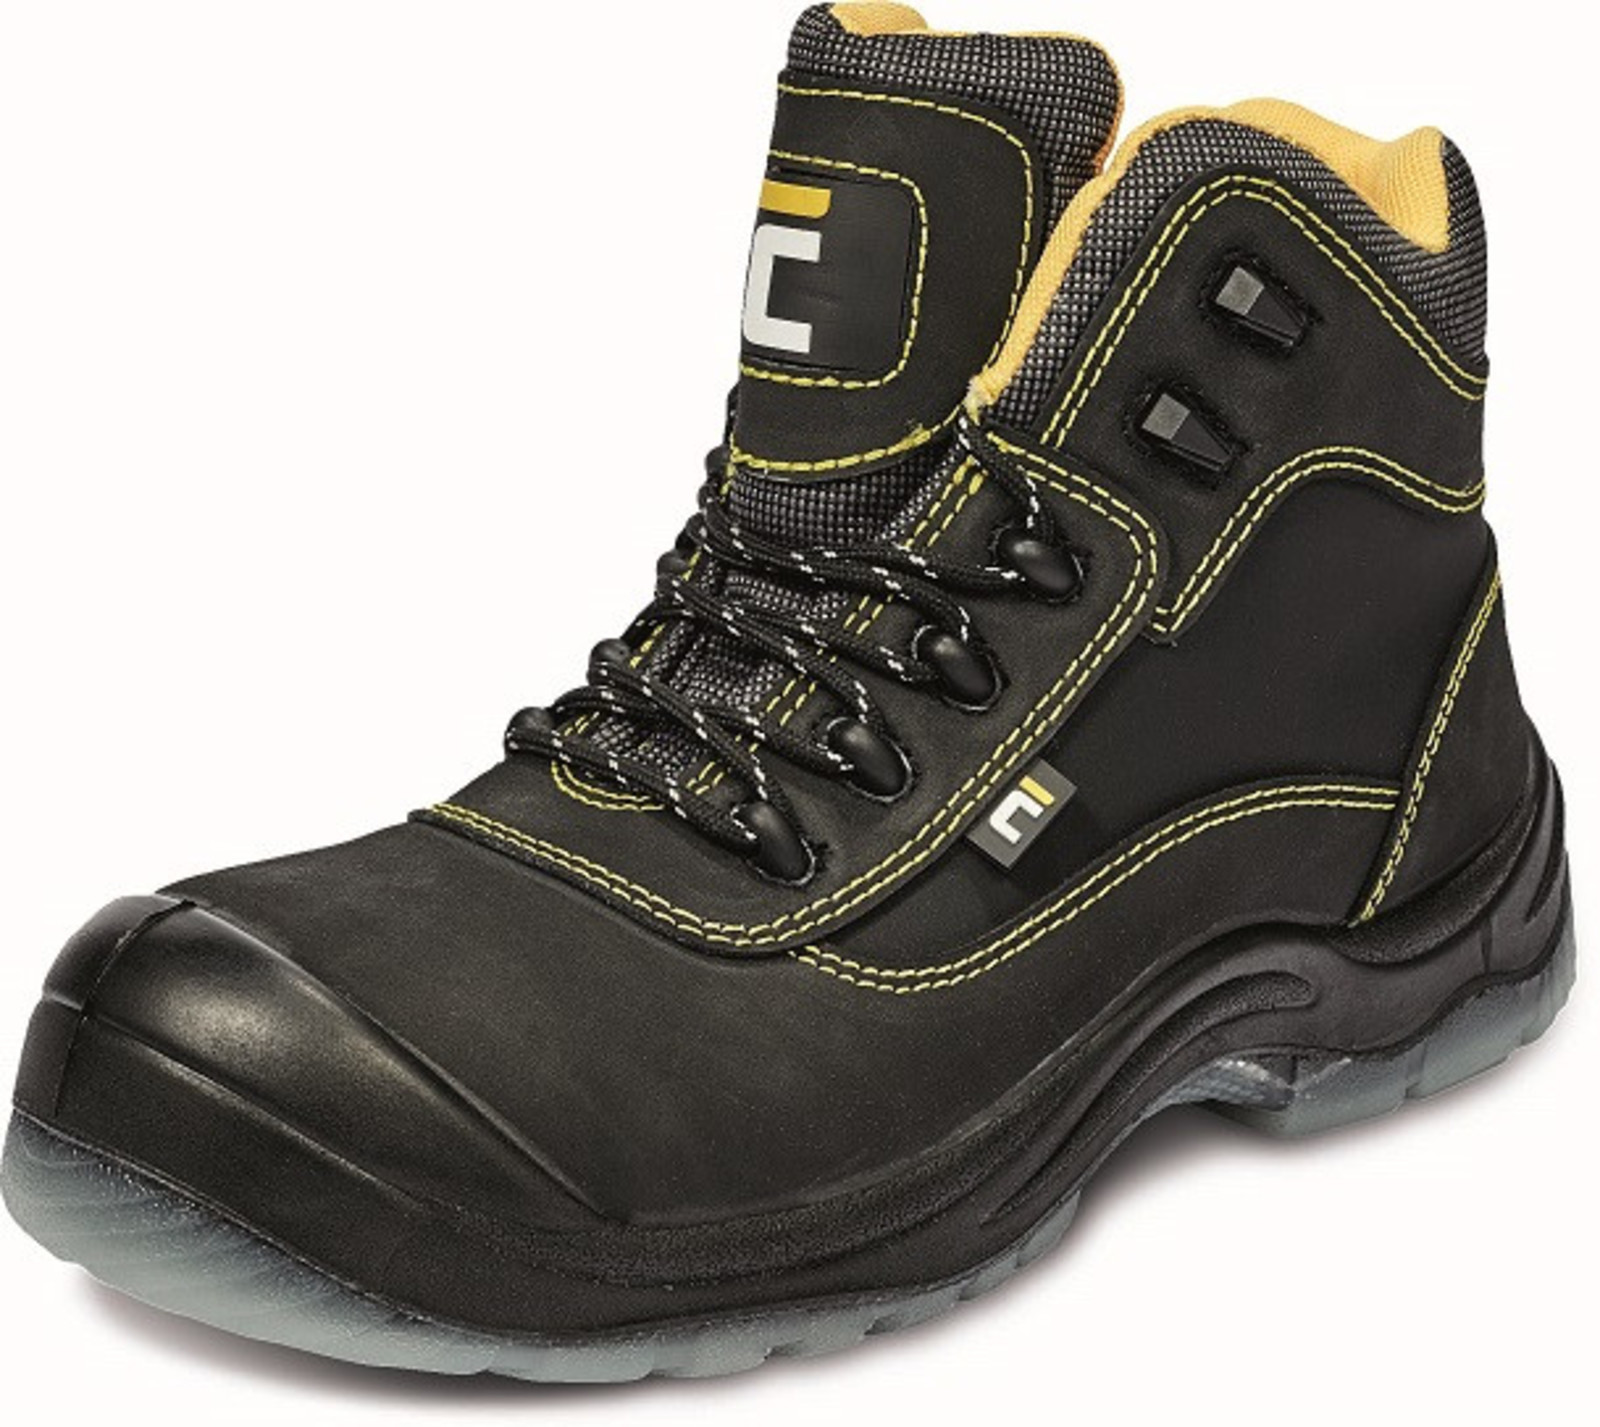 Zimná bezpečnostná obuv Cerva BK S3 - veľkosť: 46, farba: čierna